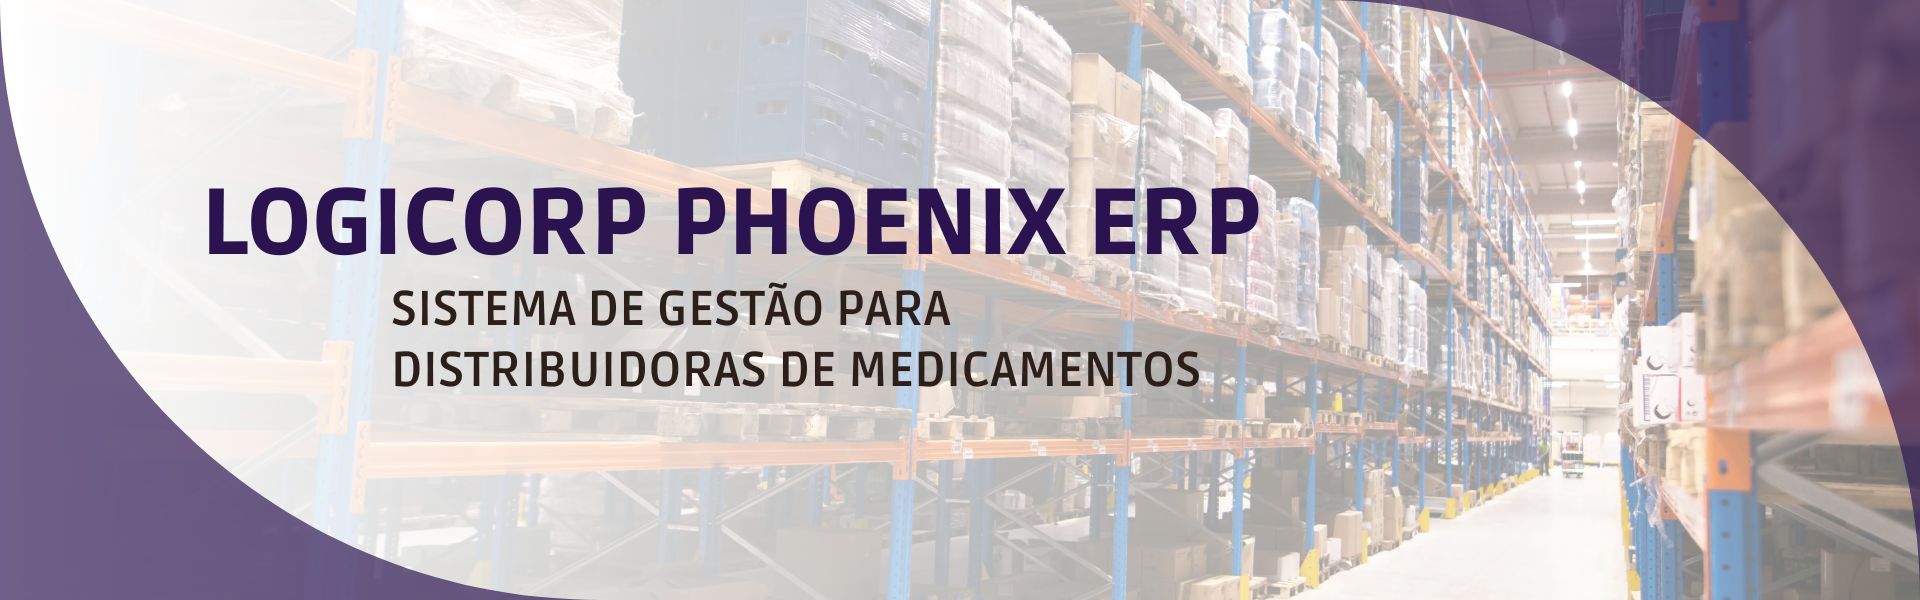 Logicorp Phoenix ERP